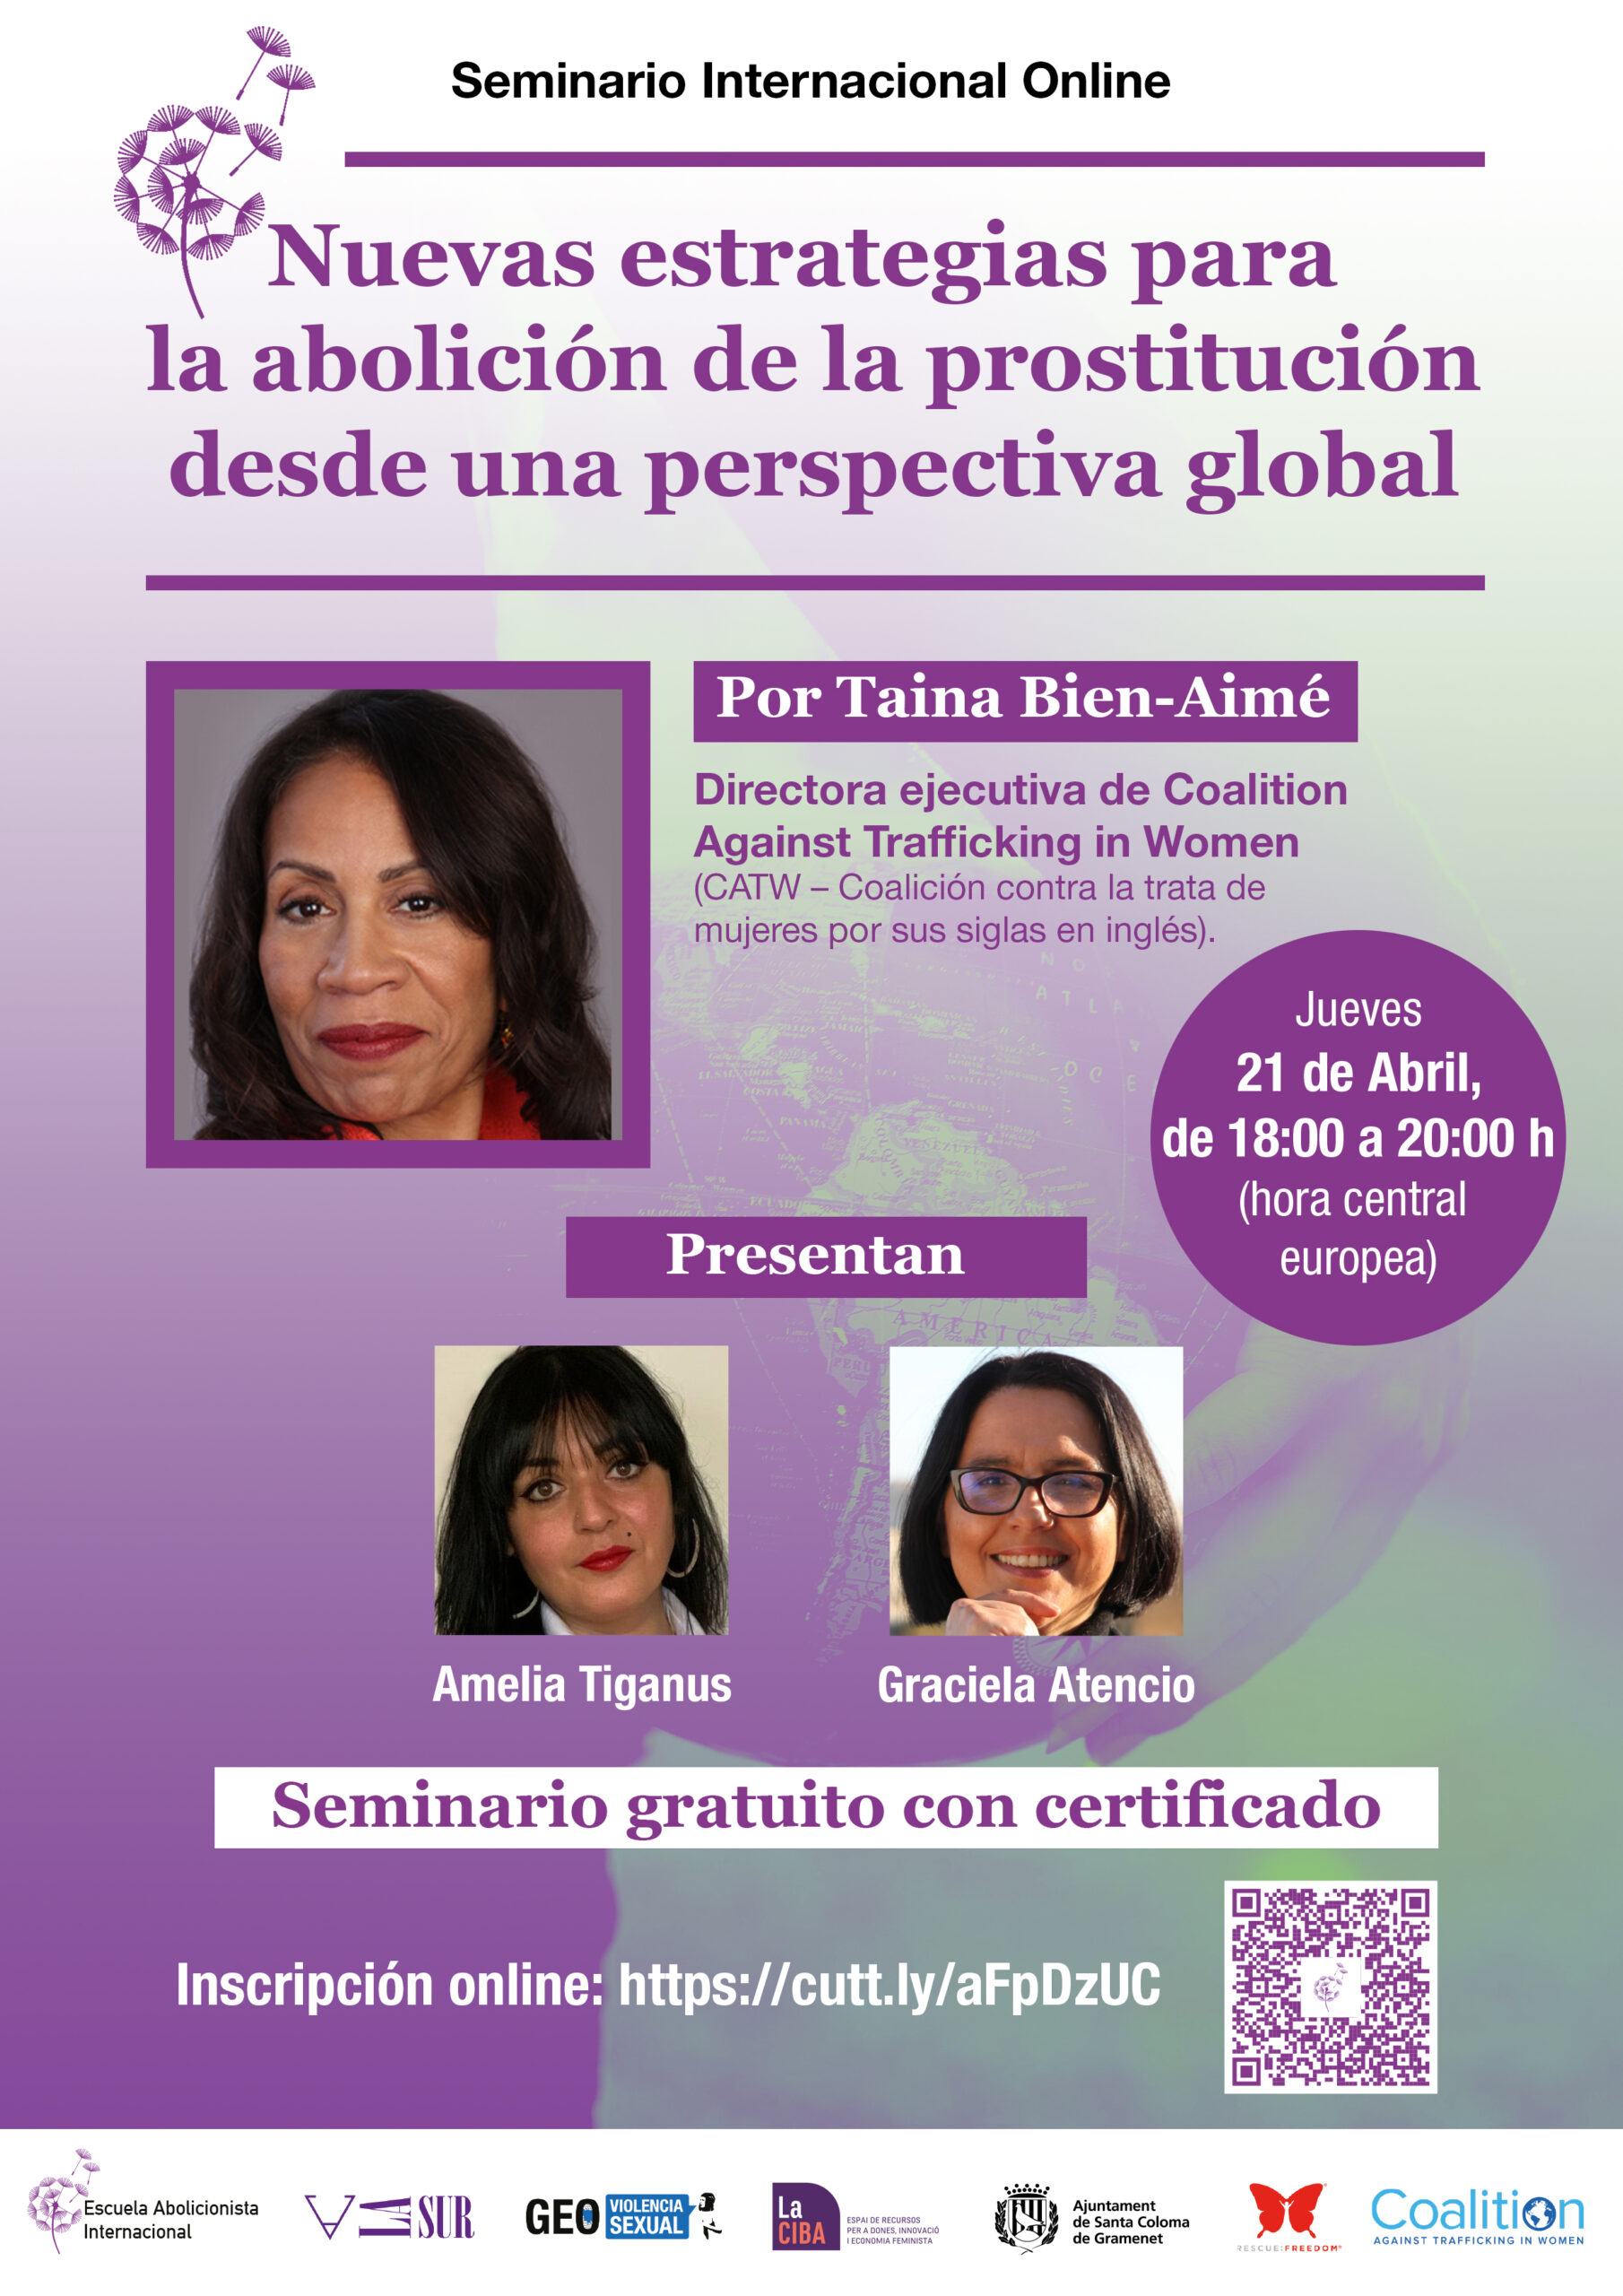 Seminario Internacional Online: Nuevas estrategias para la abolición de la prostitución desde una perspectiva global